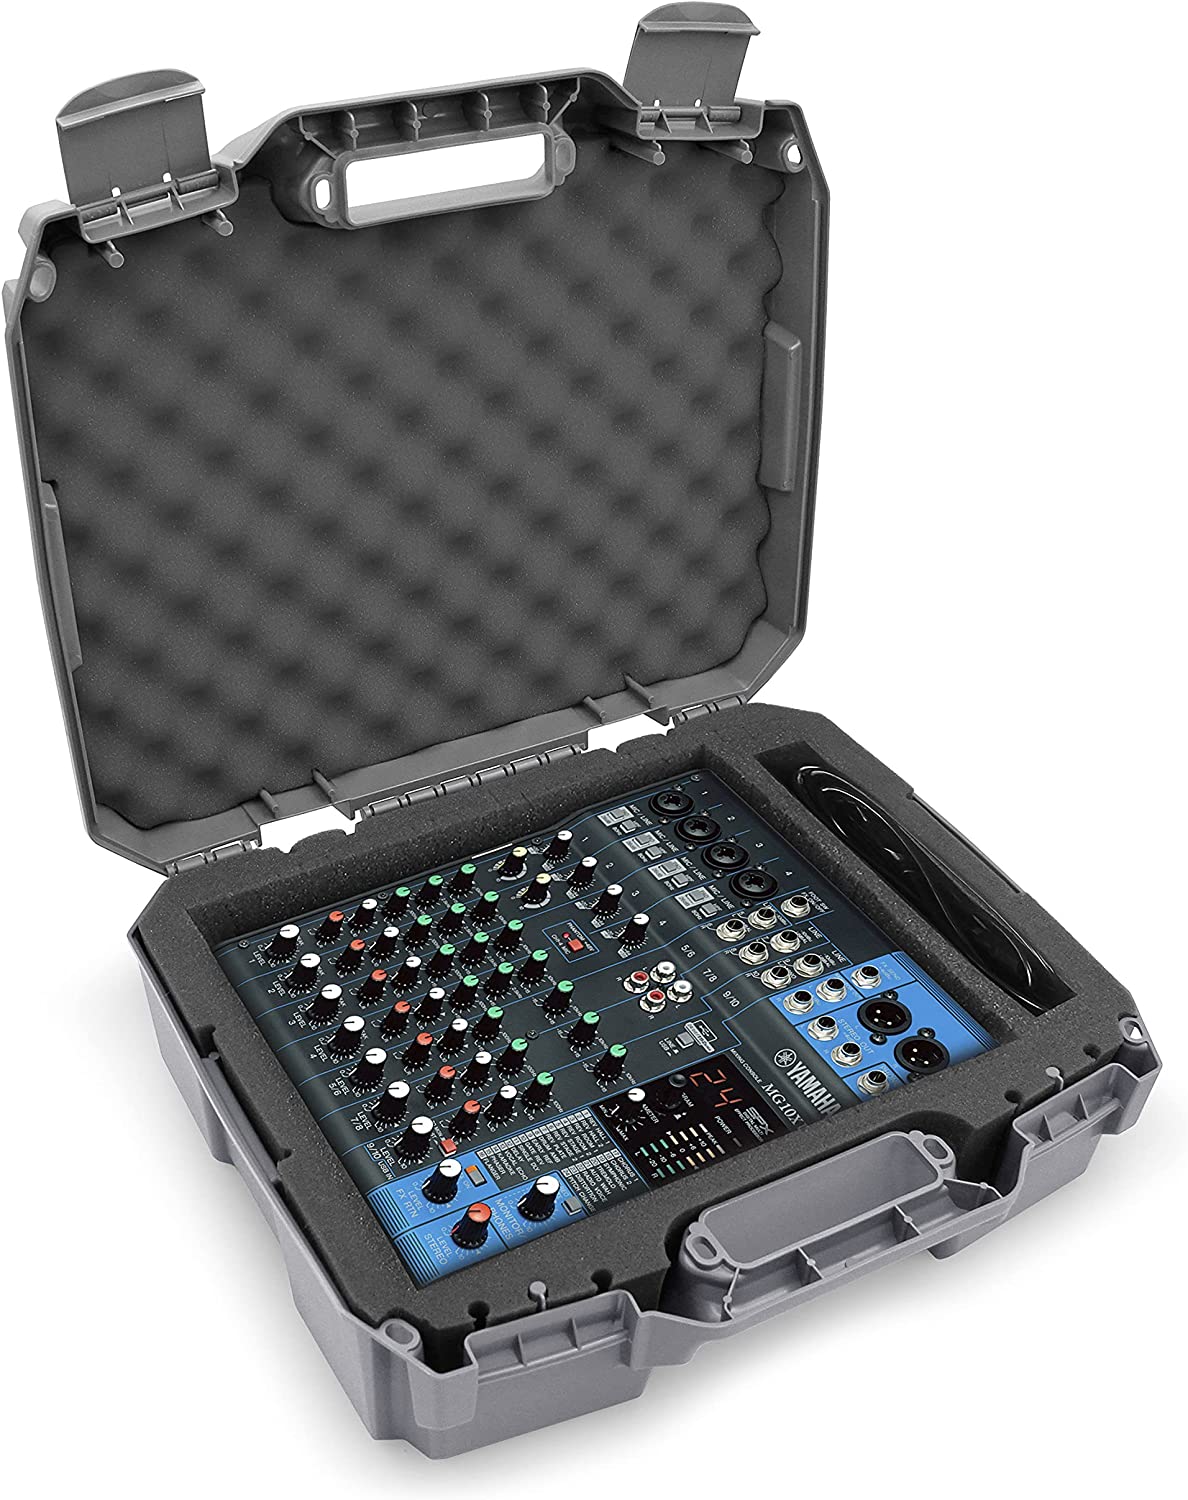 CASEMATIX DJ Mixer Travel Case for Yamaha MG10XU, MG10 10 Input